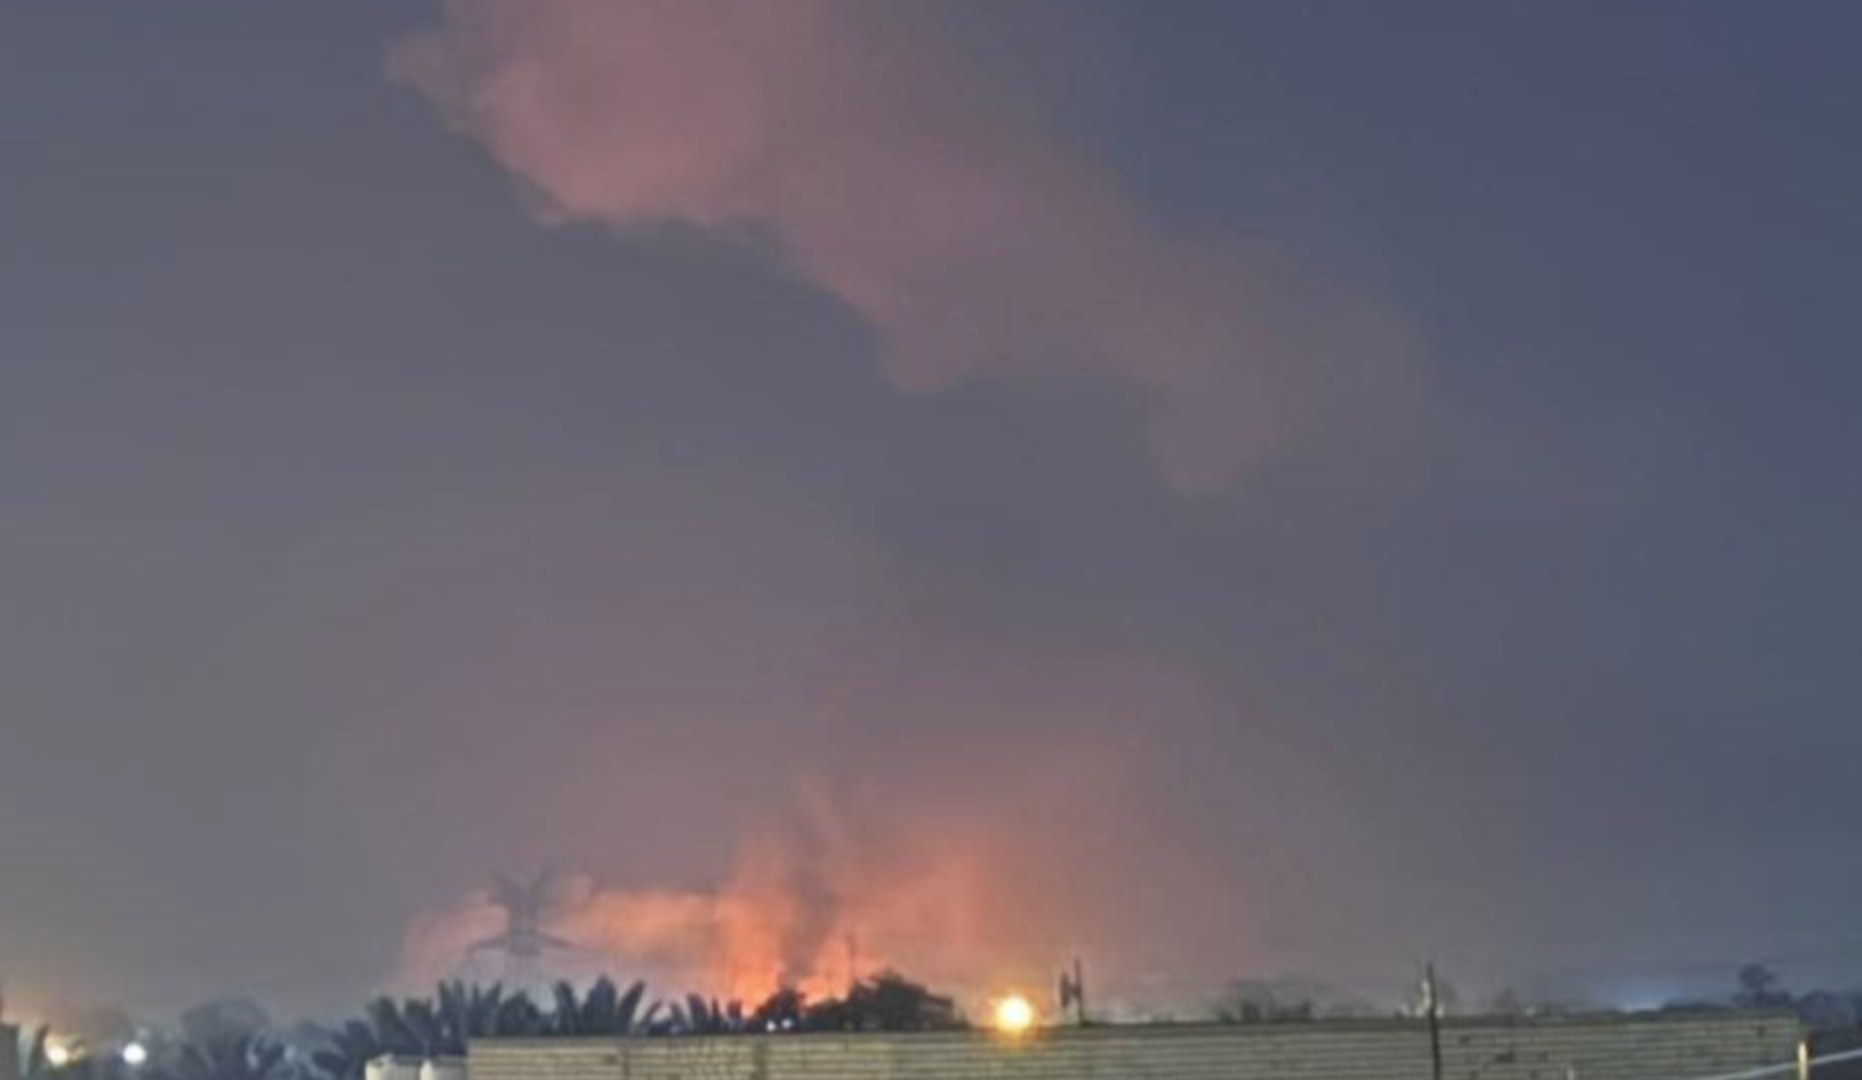 ثلاثة جرحى بقصف "كالسو" والدفاع المدني يعمل على احتواء الحريق "الكبير"